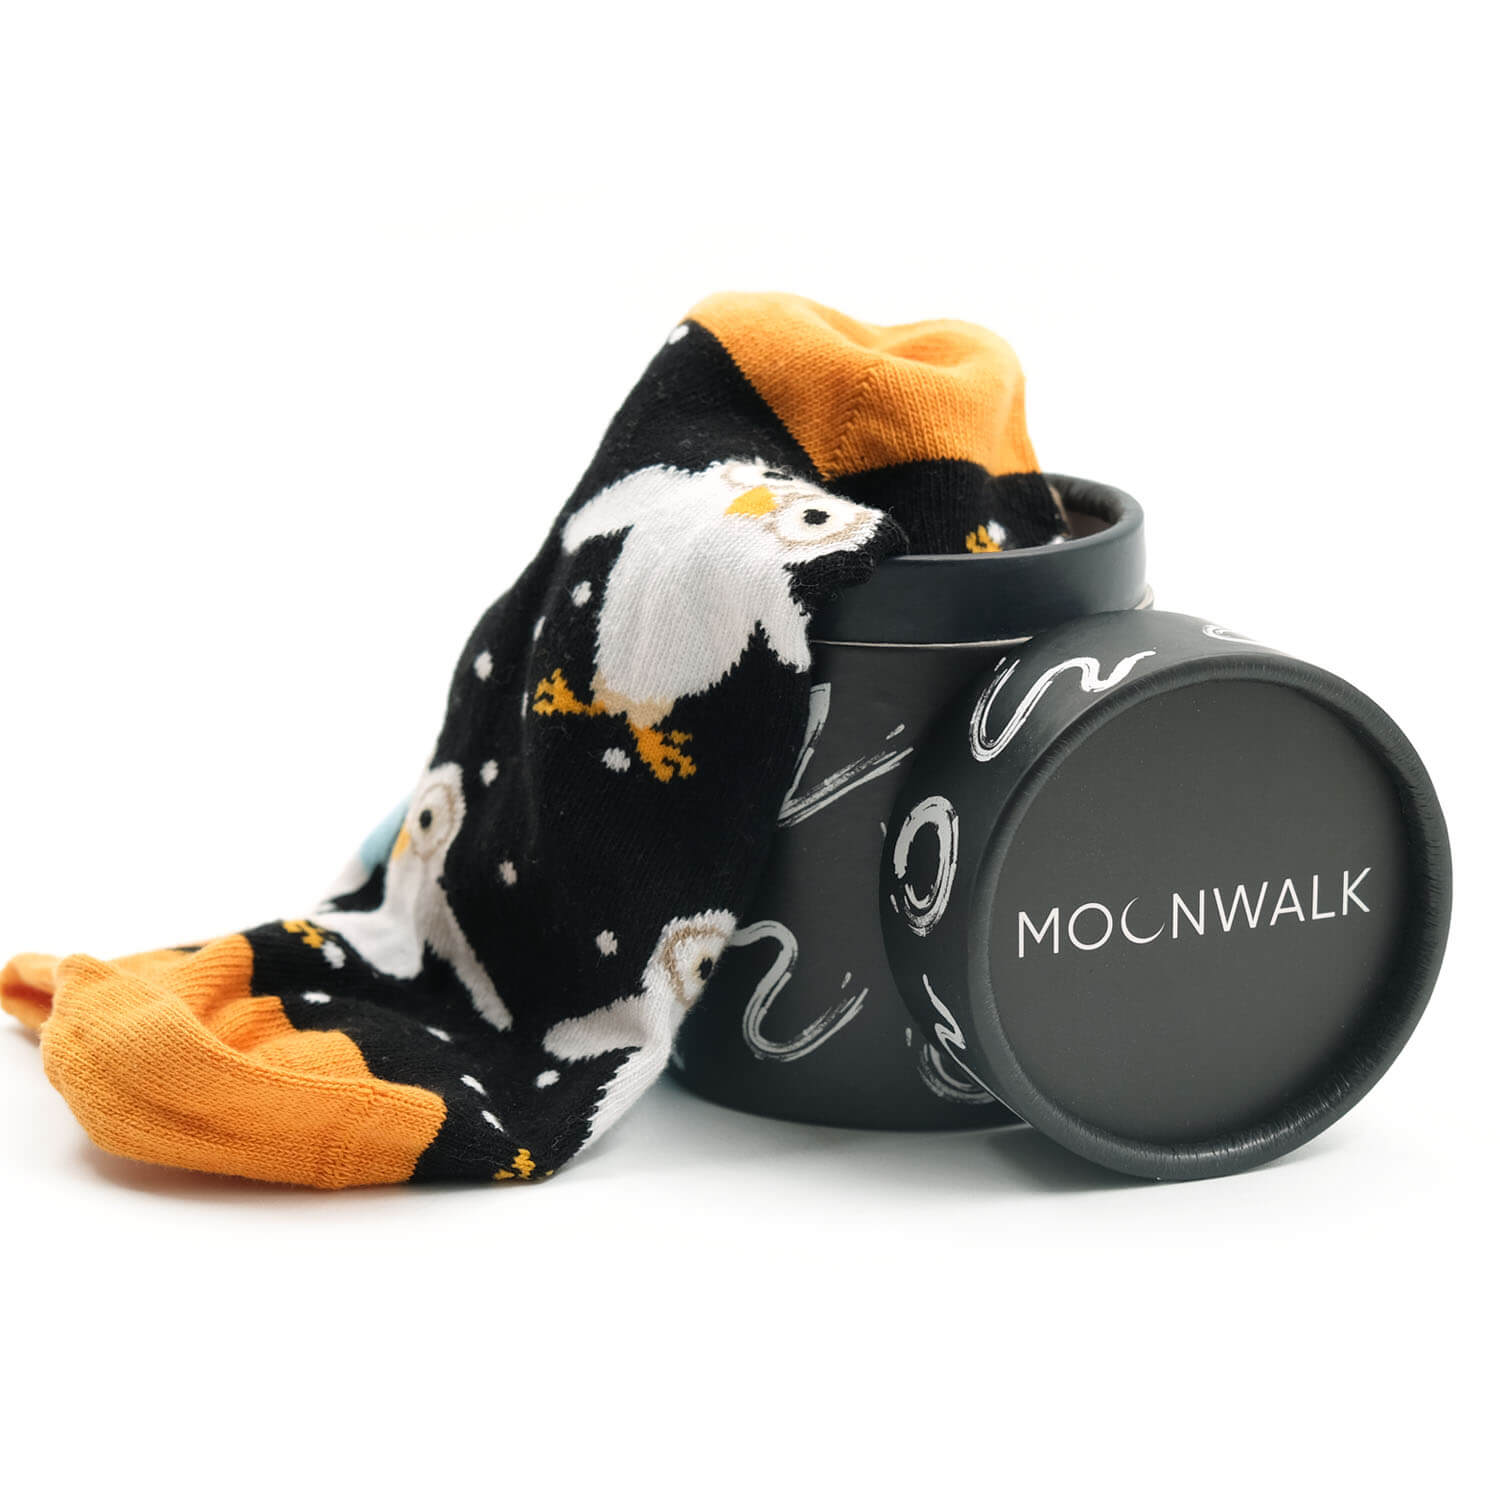 Moonwalk Sock - Gündüz & Gece Baykuş Temalı Çorap